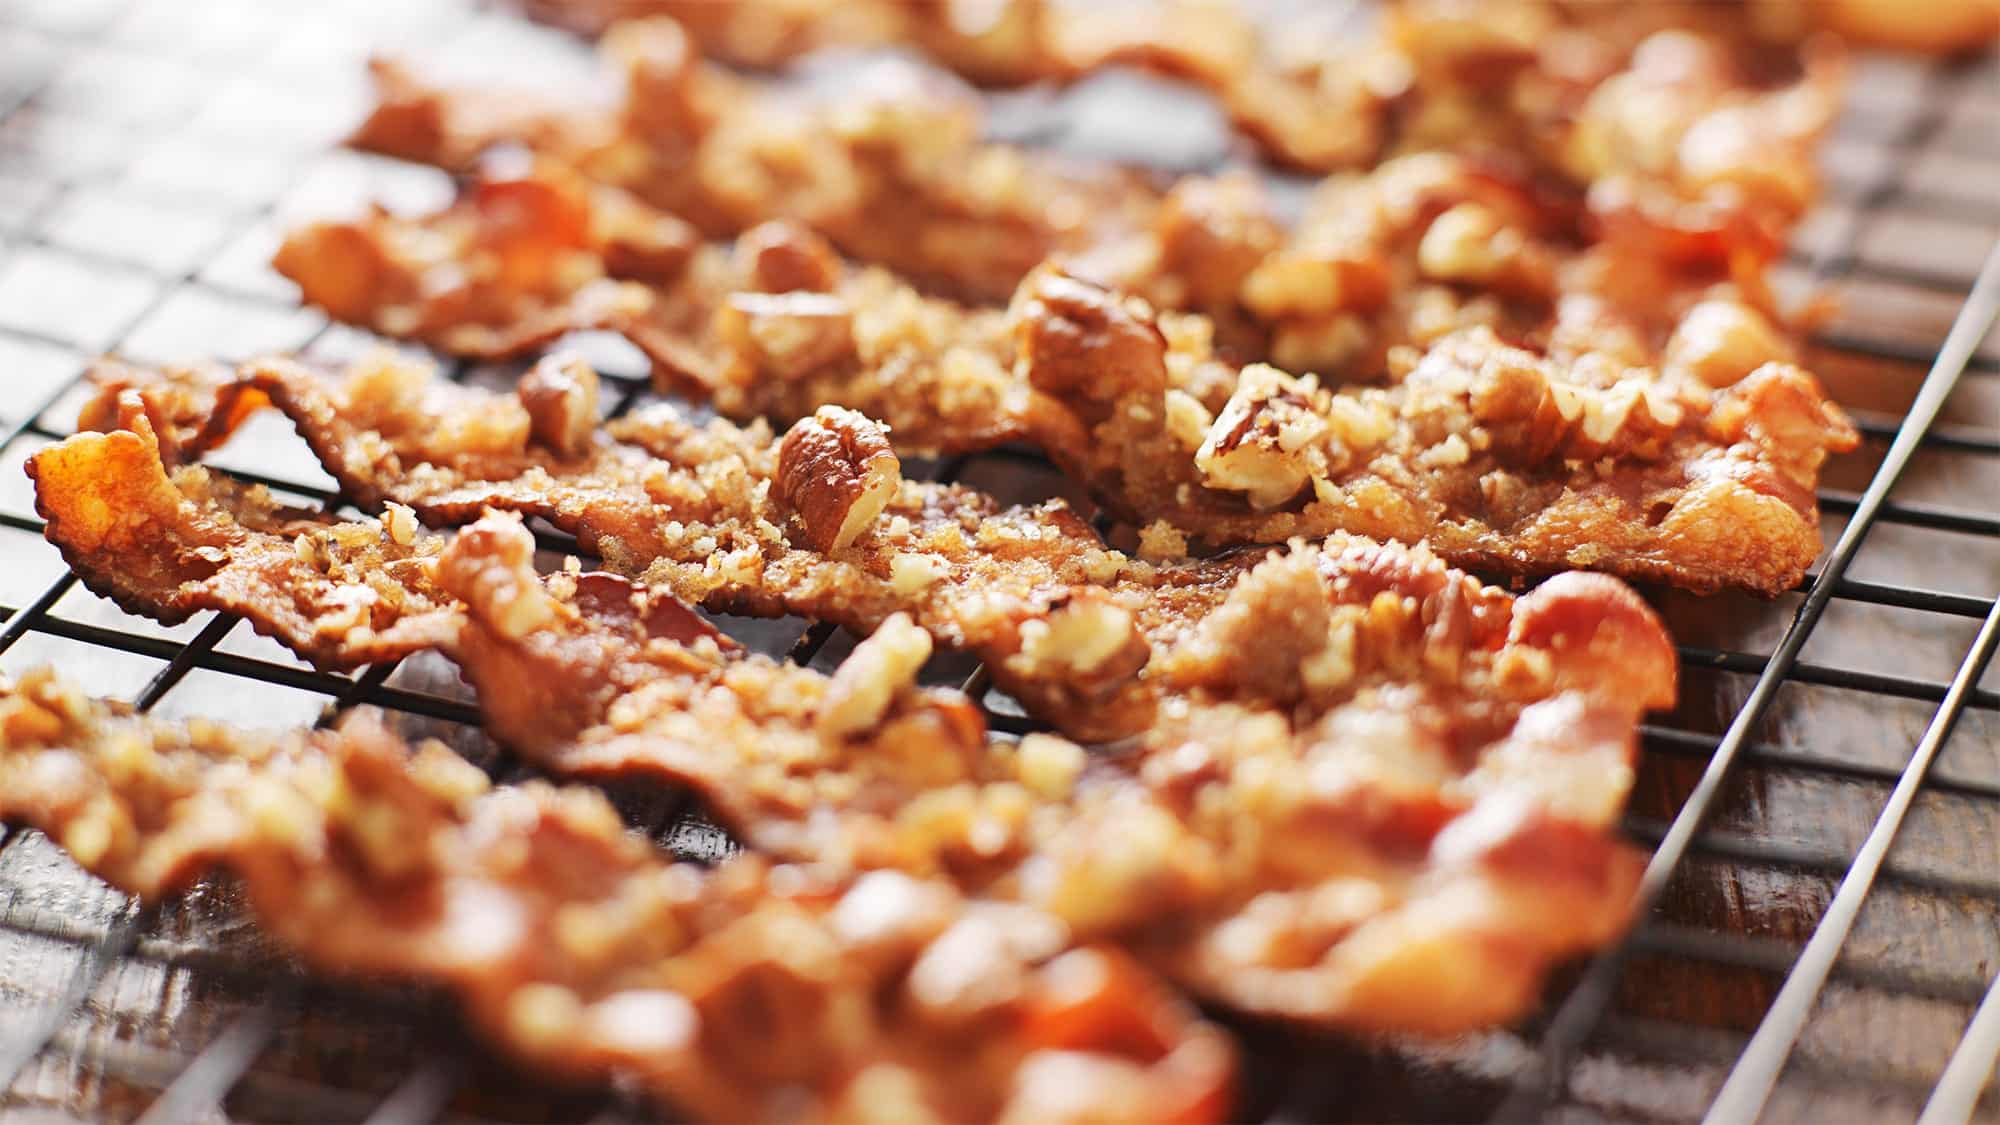 Des tranches de bacon cuites sur une grille au four, caramélisées et piquantes garnies de noix